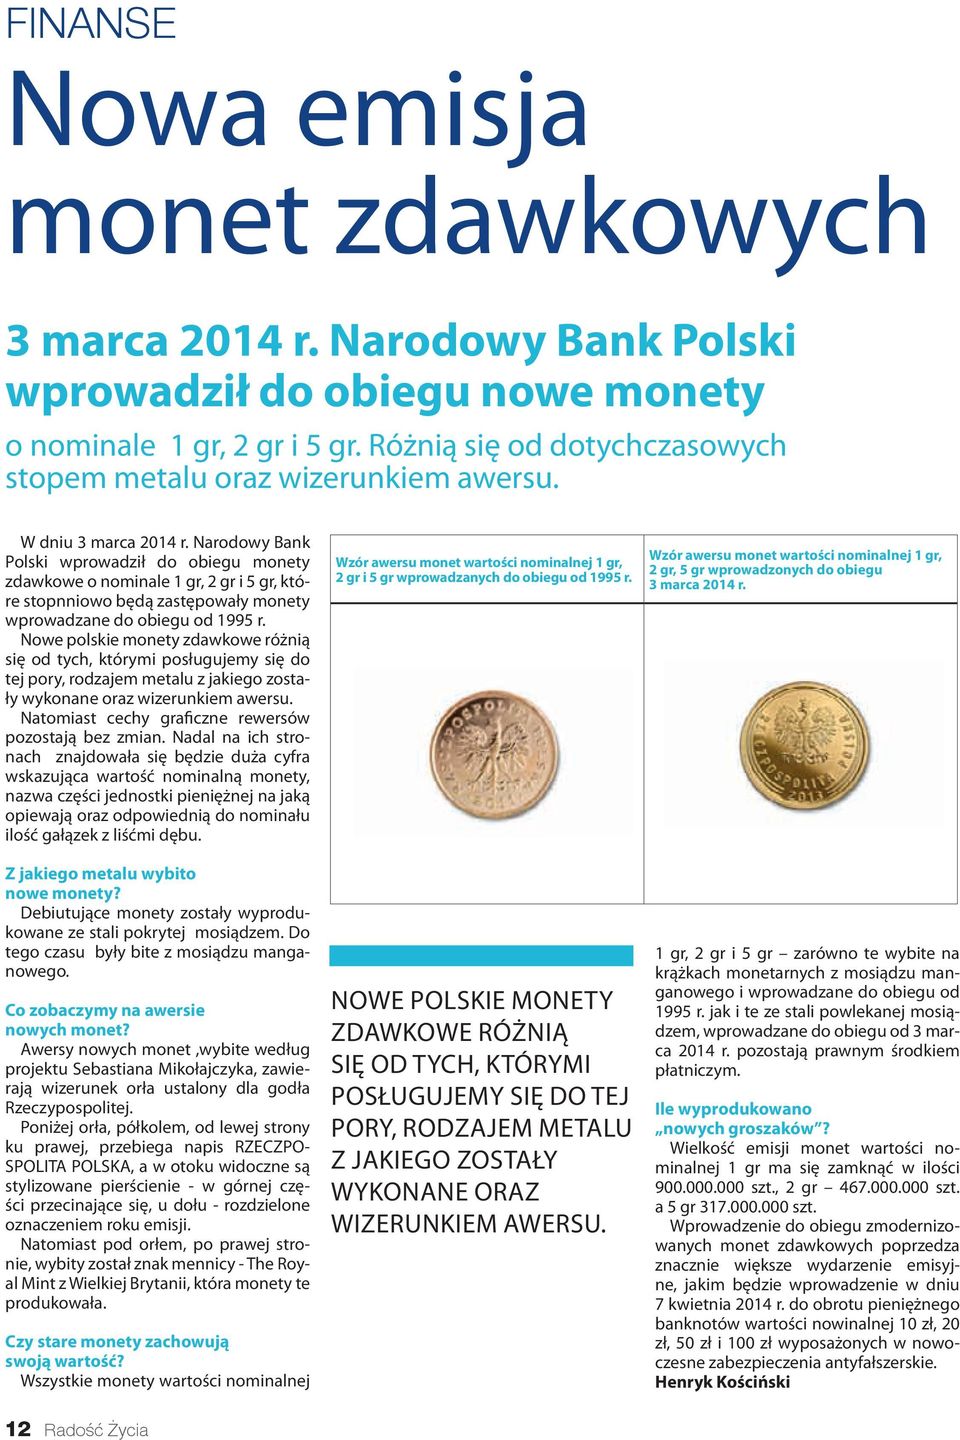 Nowe polskie monety zdawkowe różnią się od tych, którymi posługujemy się do tej pory, rodzajem metalu z jakiego zostały wykonane oraz wizerunkiem awersu.